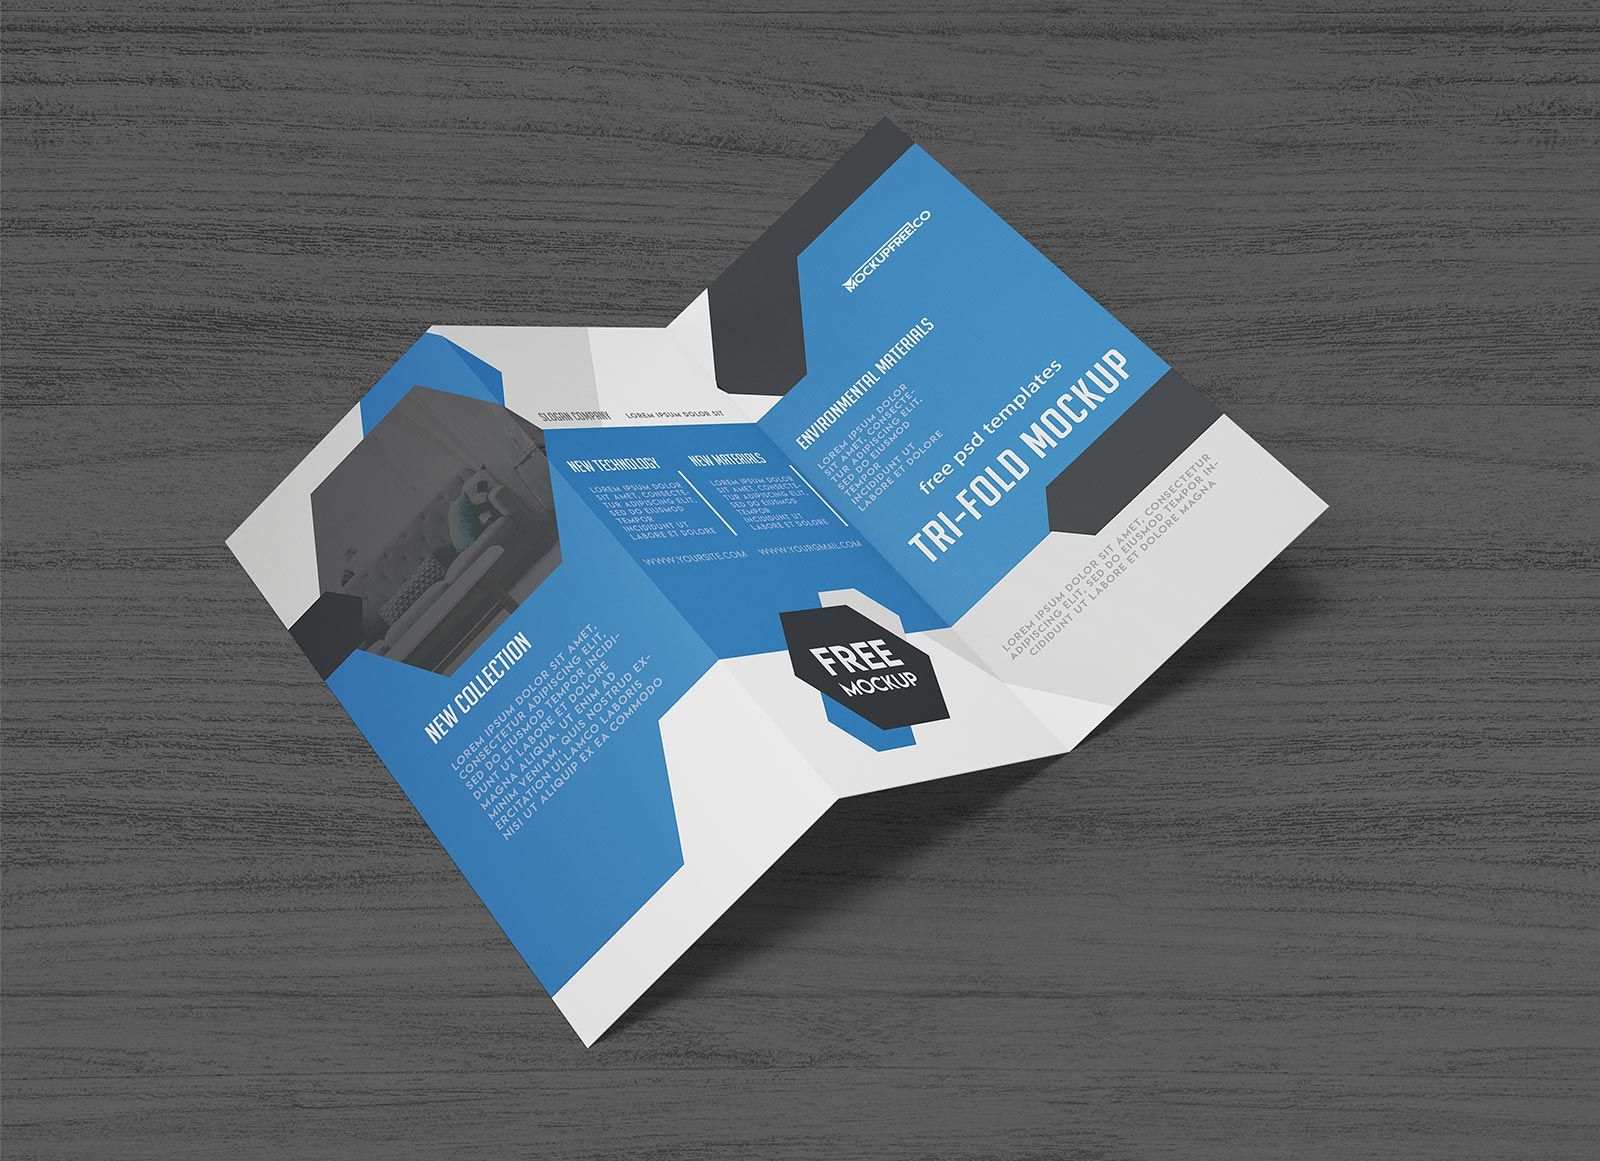 Free Tri-Fold Brochure Mockup 2 PSD File in 2020 | Brochure mockup psd